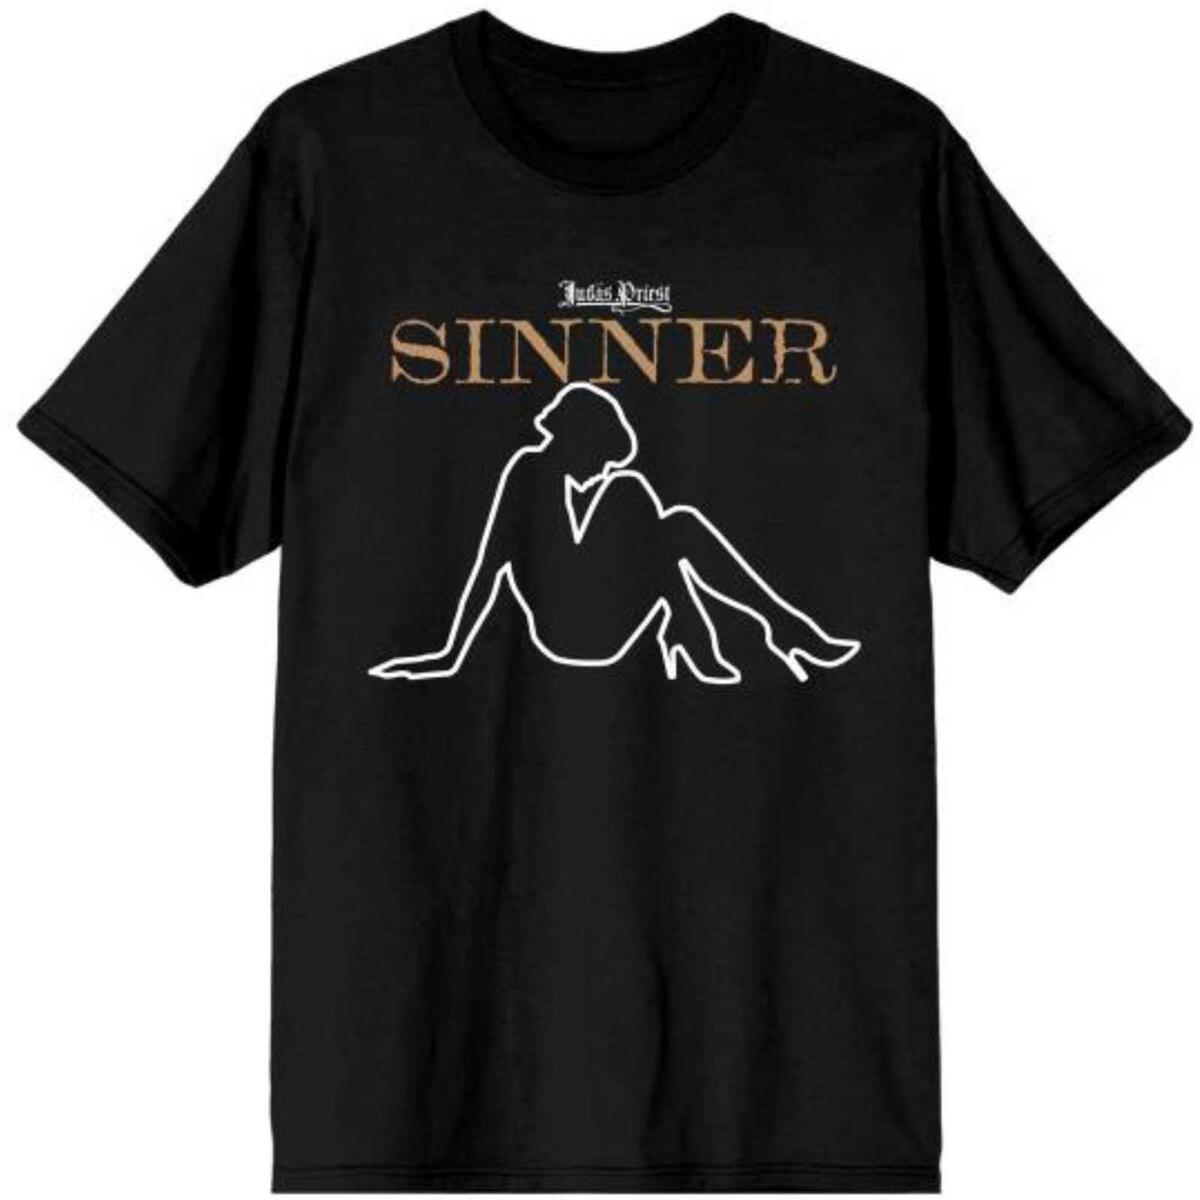 (ジューダス プリースト) Judas Priest オフィシャル商品 ユニセックス Sin After Sin Sinner Lady Tシャツ コットン 半袖 トップス 【海外通販】